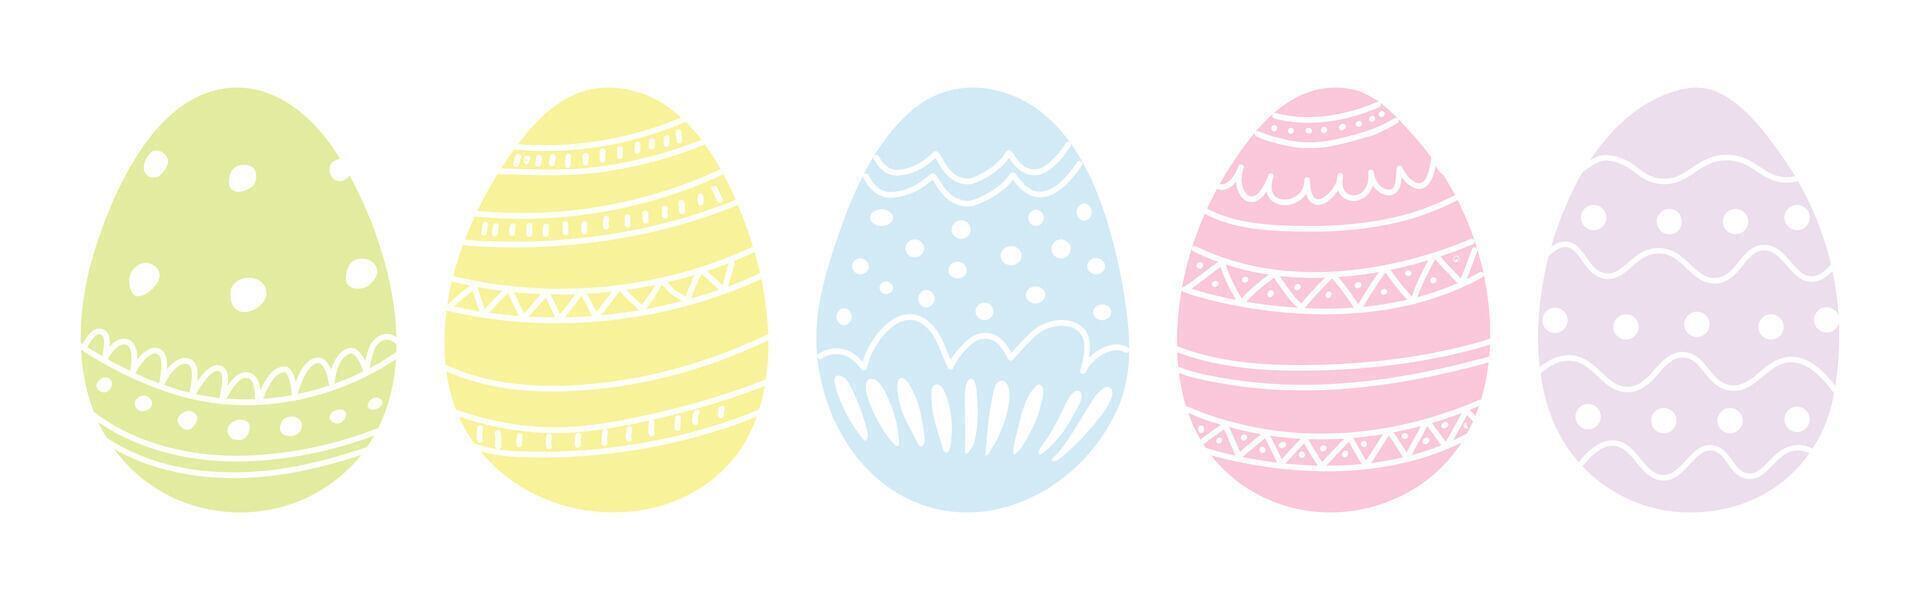 Pasqua uova. impostato di vettore illustrazioni nel piatto stile.